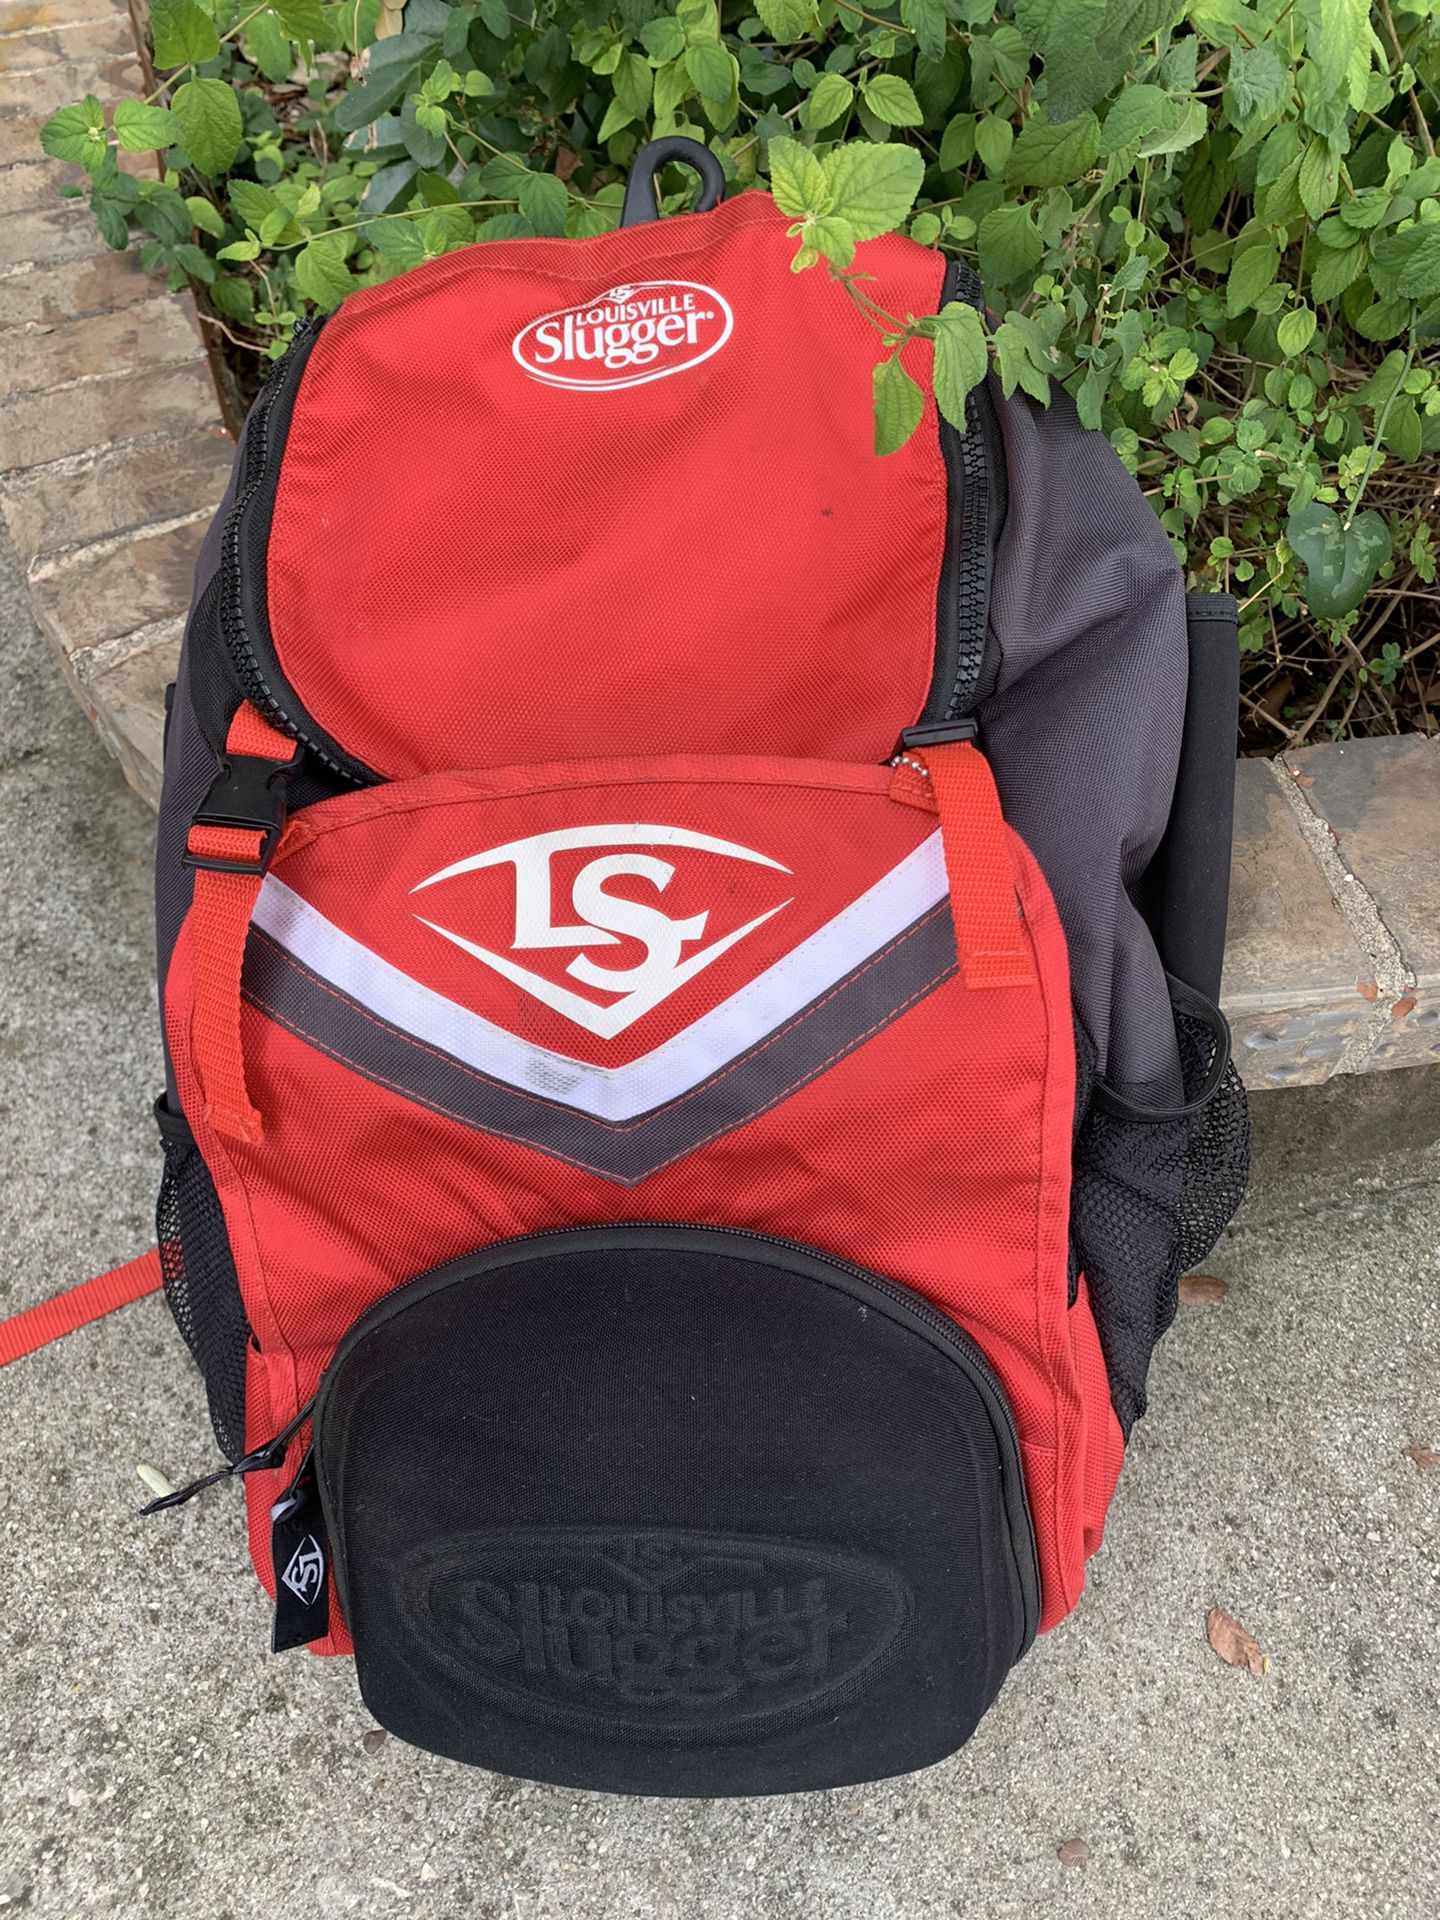 Used Louisville Slugger Backpack